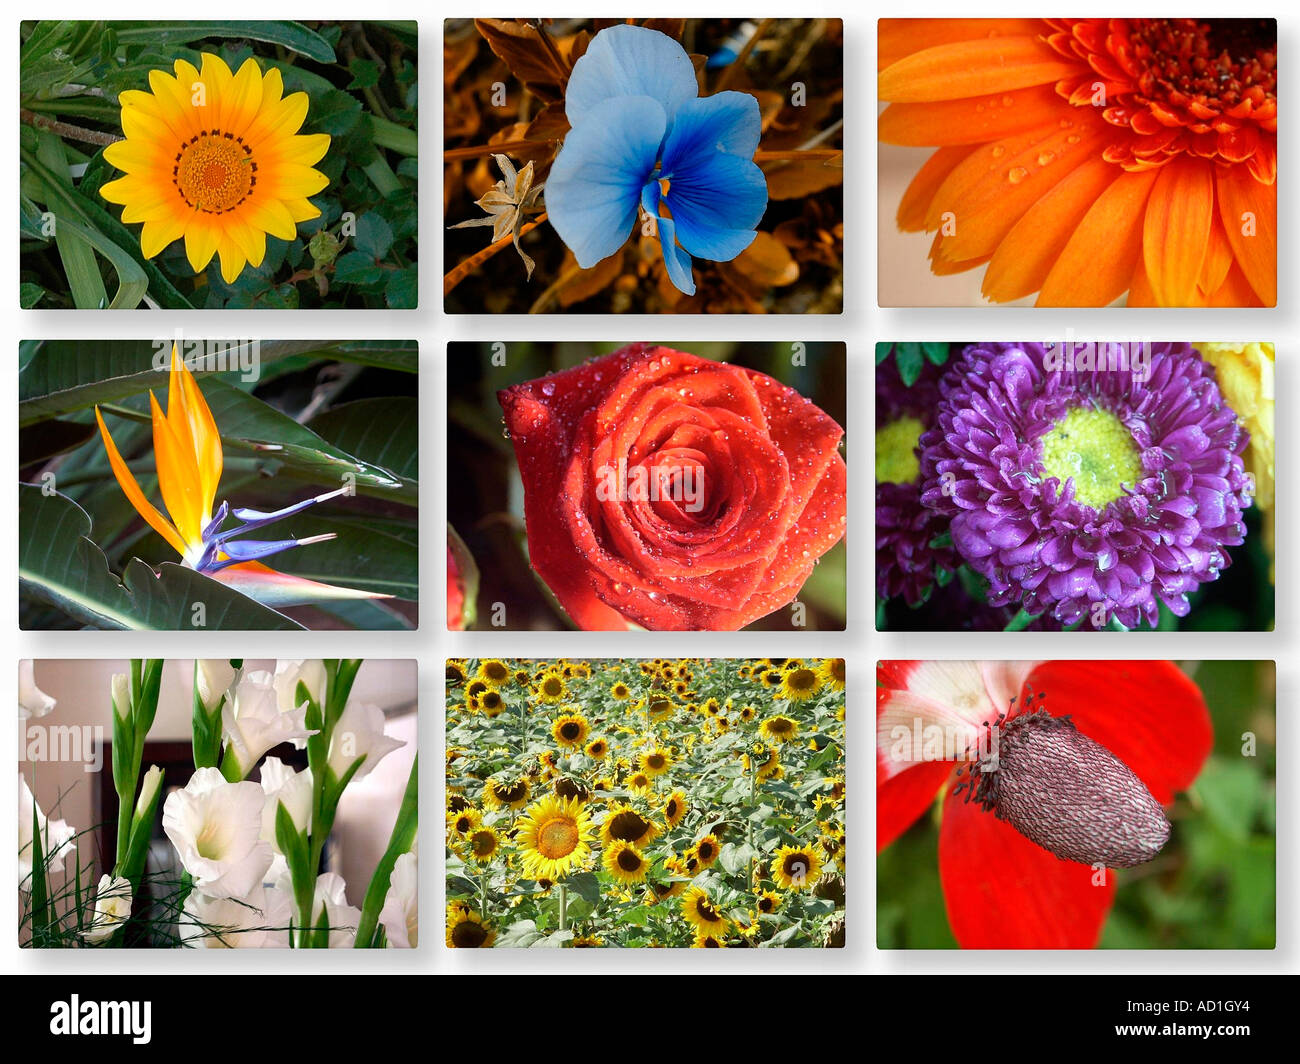 9 collage di immagini di fiori Foto stock - Alamy